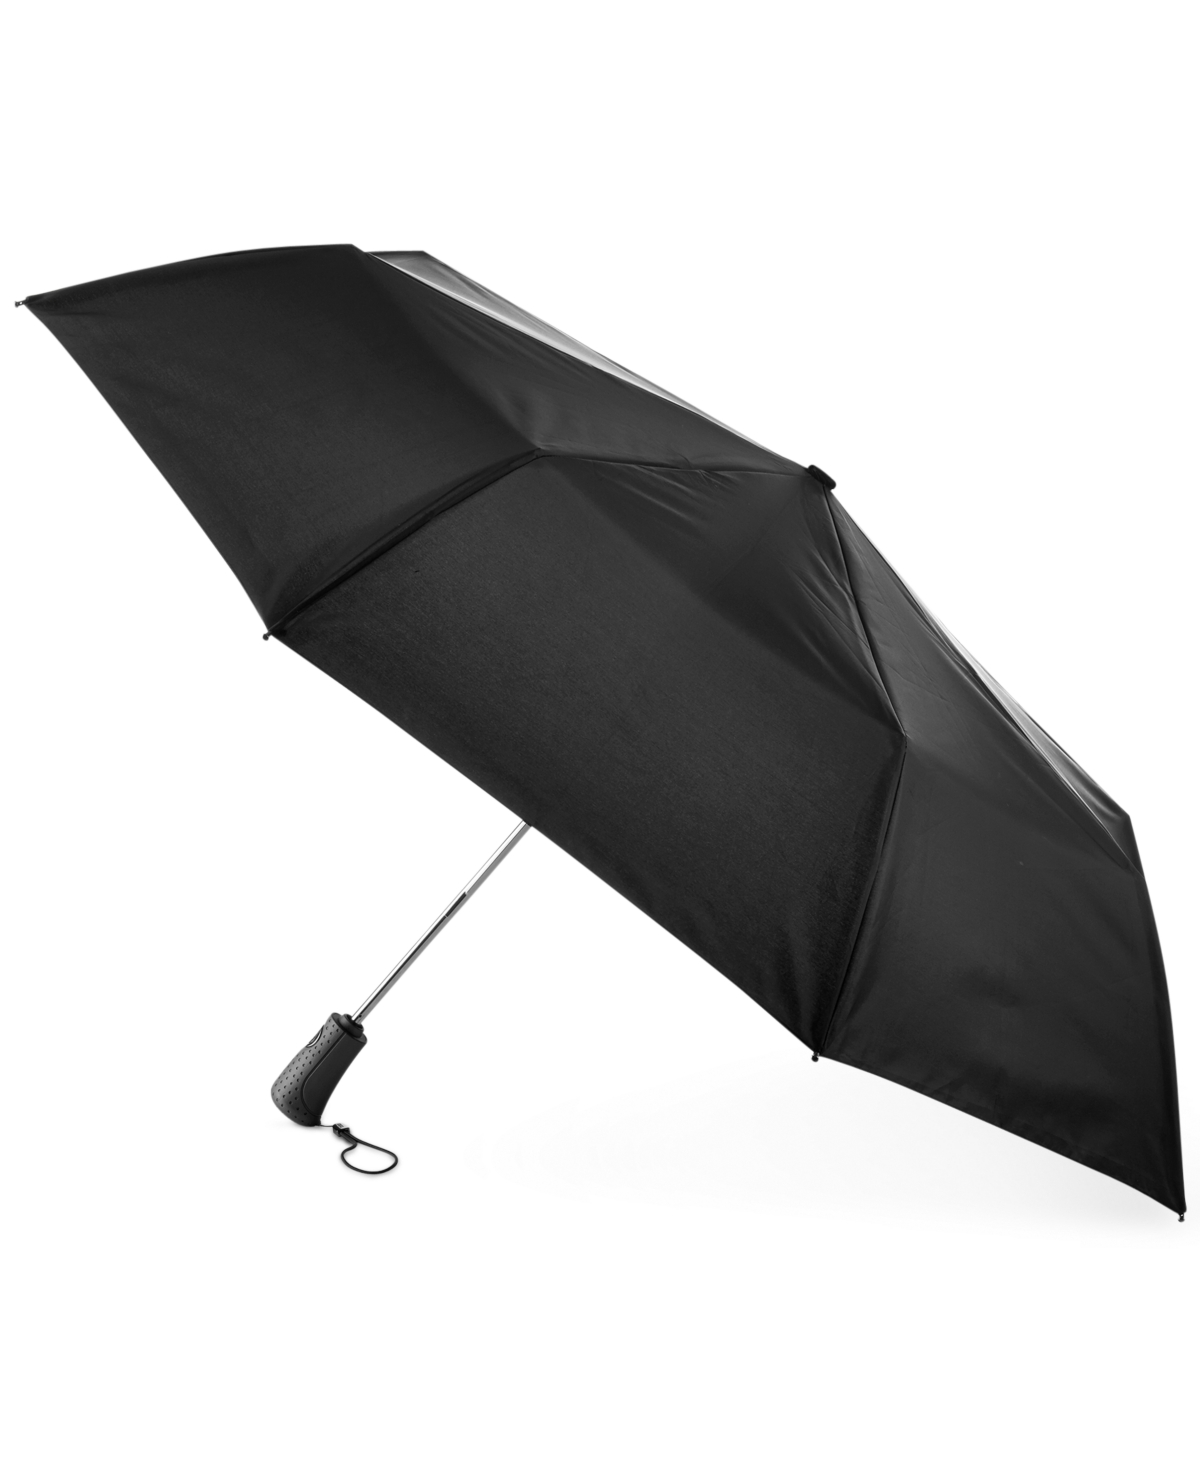 Titan Umbrella - Black